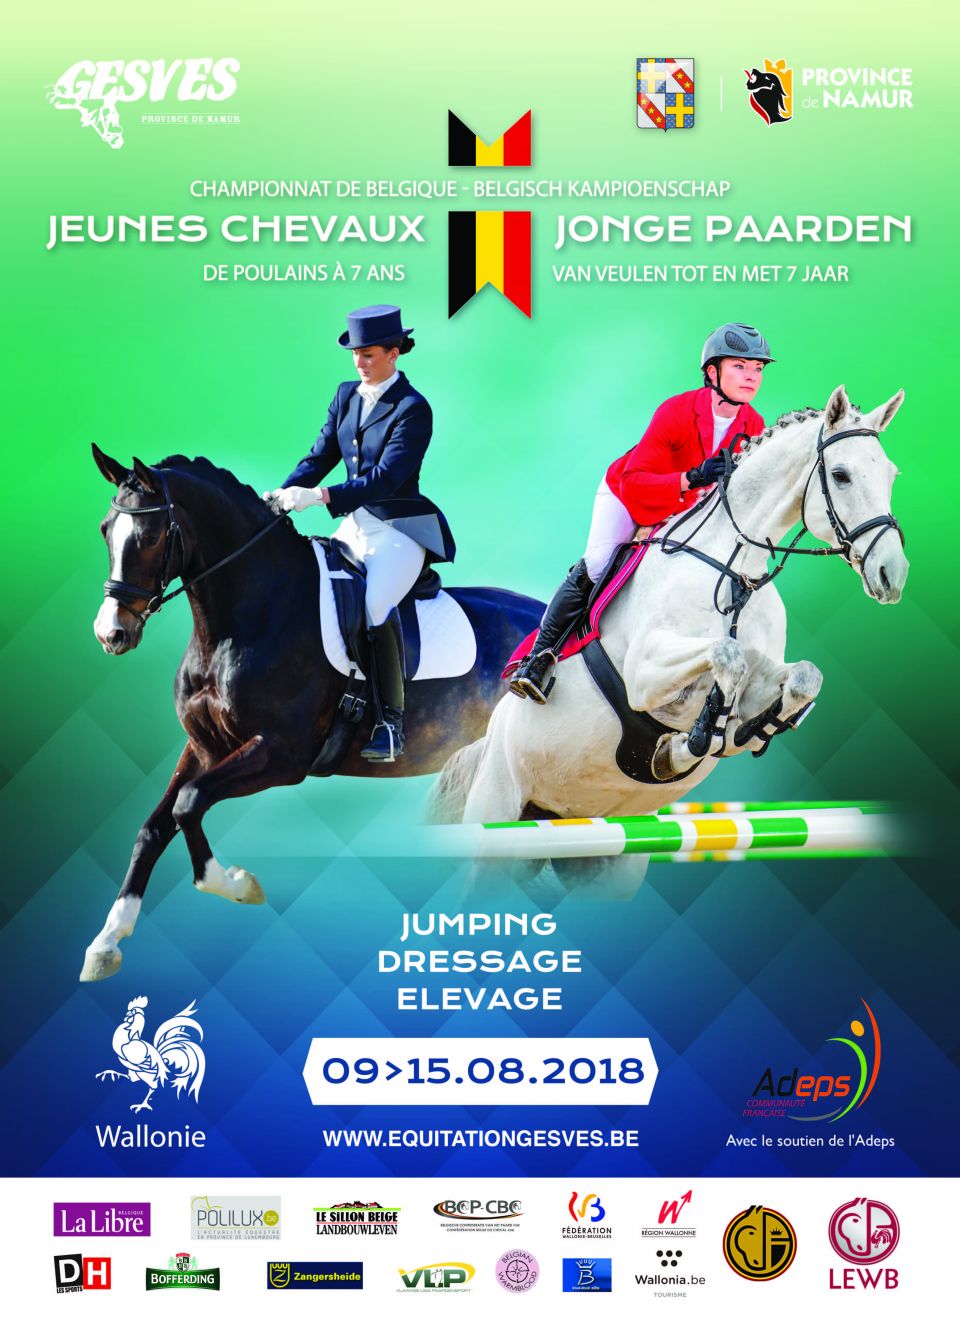 Inscrivez votre jeune cheval aux Championnats de Belgique de dressage de Gesves